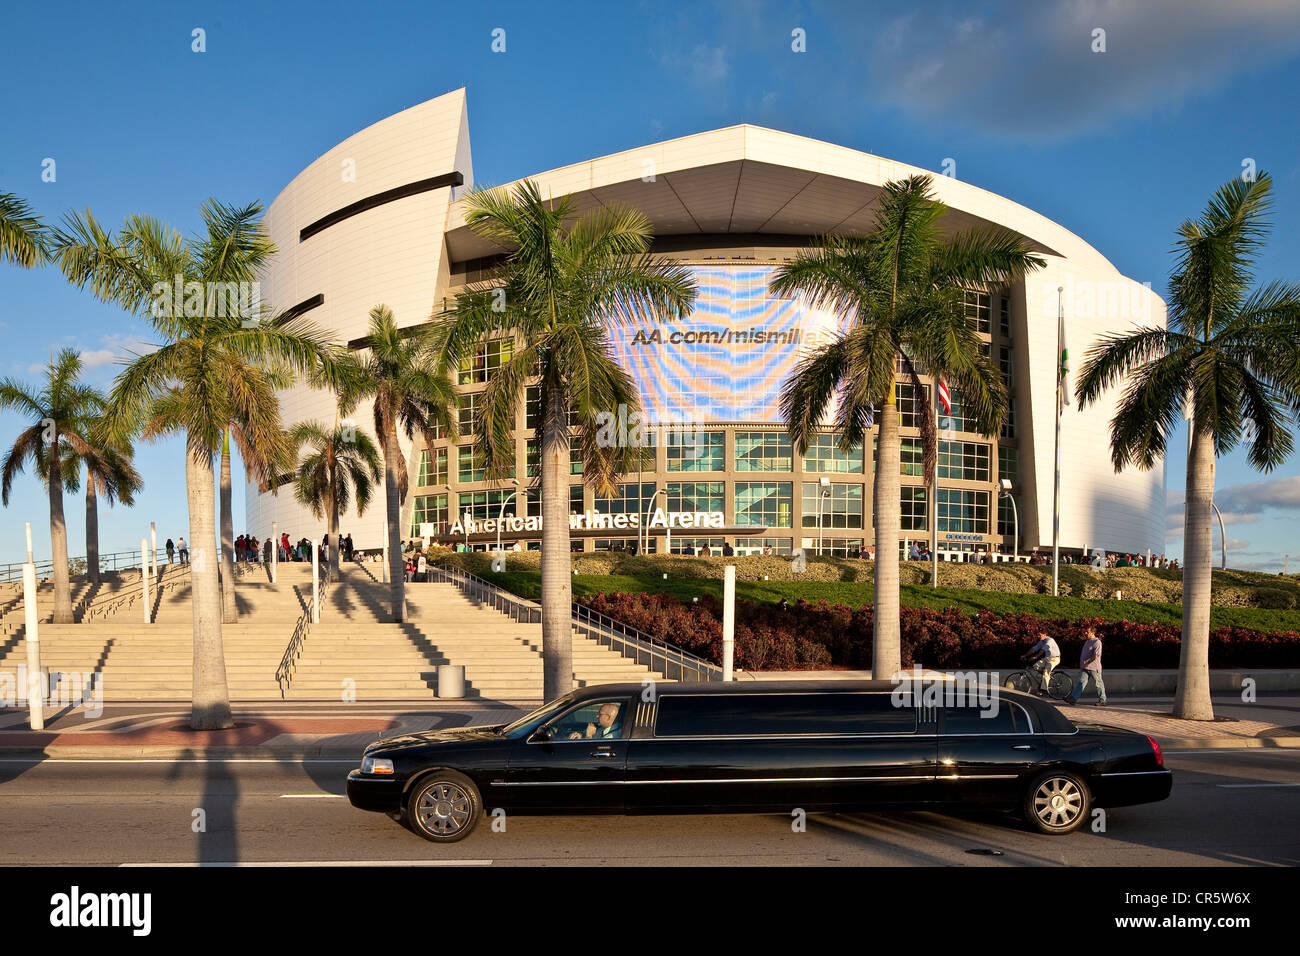 États-unis, Floride, Miami, centre-ville, l'American Airlines Arena, limousine en face du stade sportif inauguré en 1999 Banque D'Images